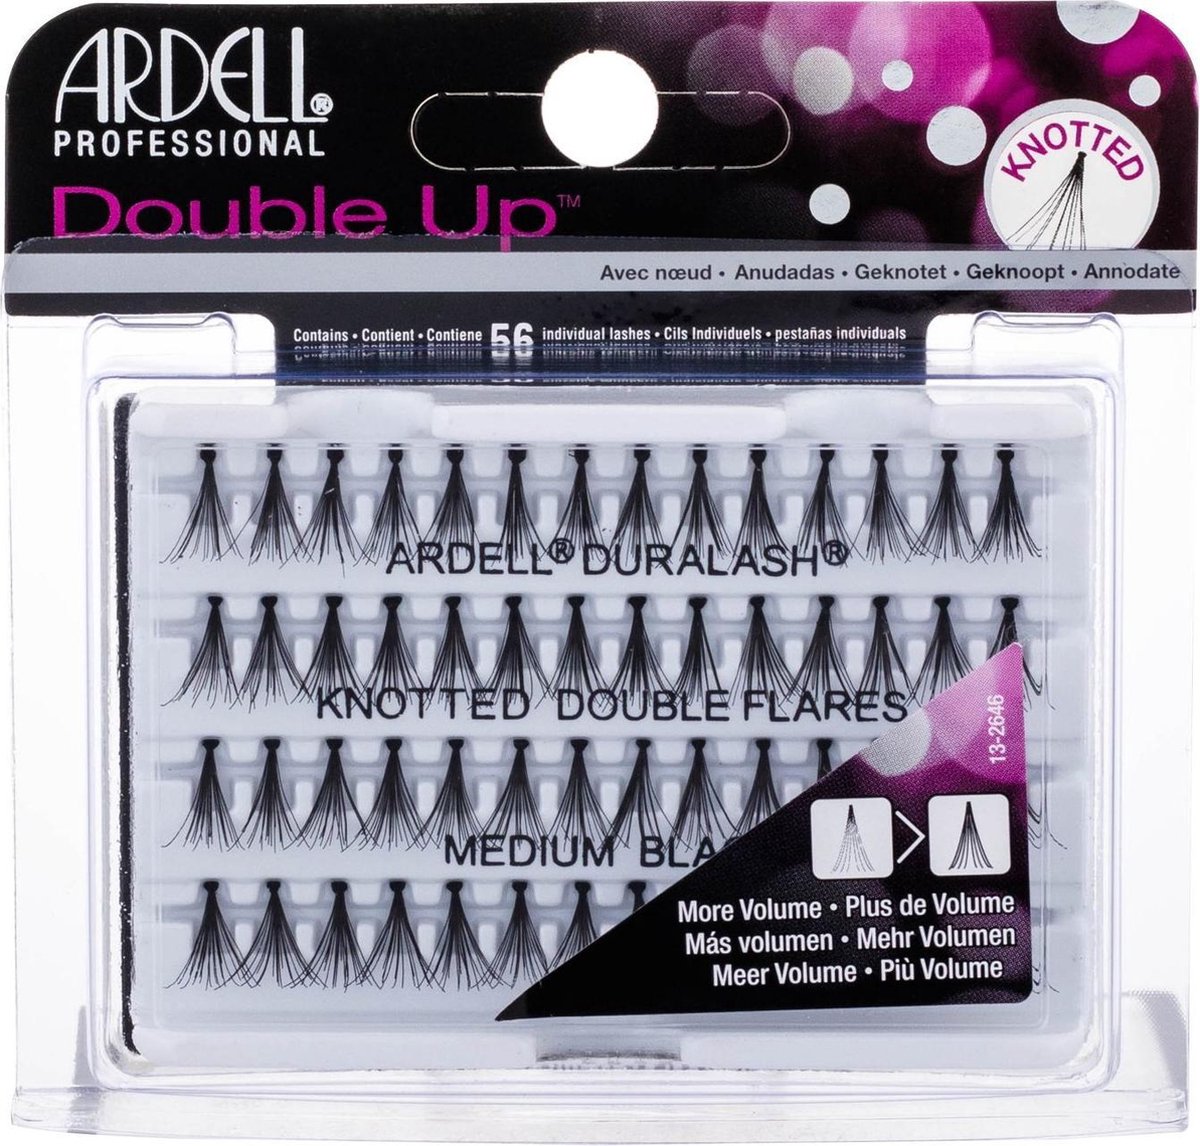 Ardell - Double Up Duralash Knotted Double Flares - False Eyelashes Medium Black - 56.0ks